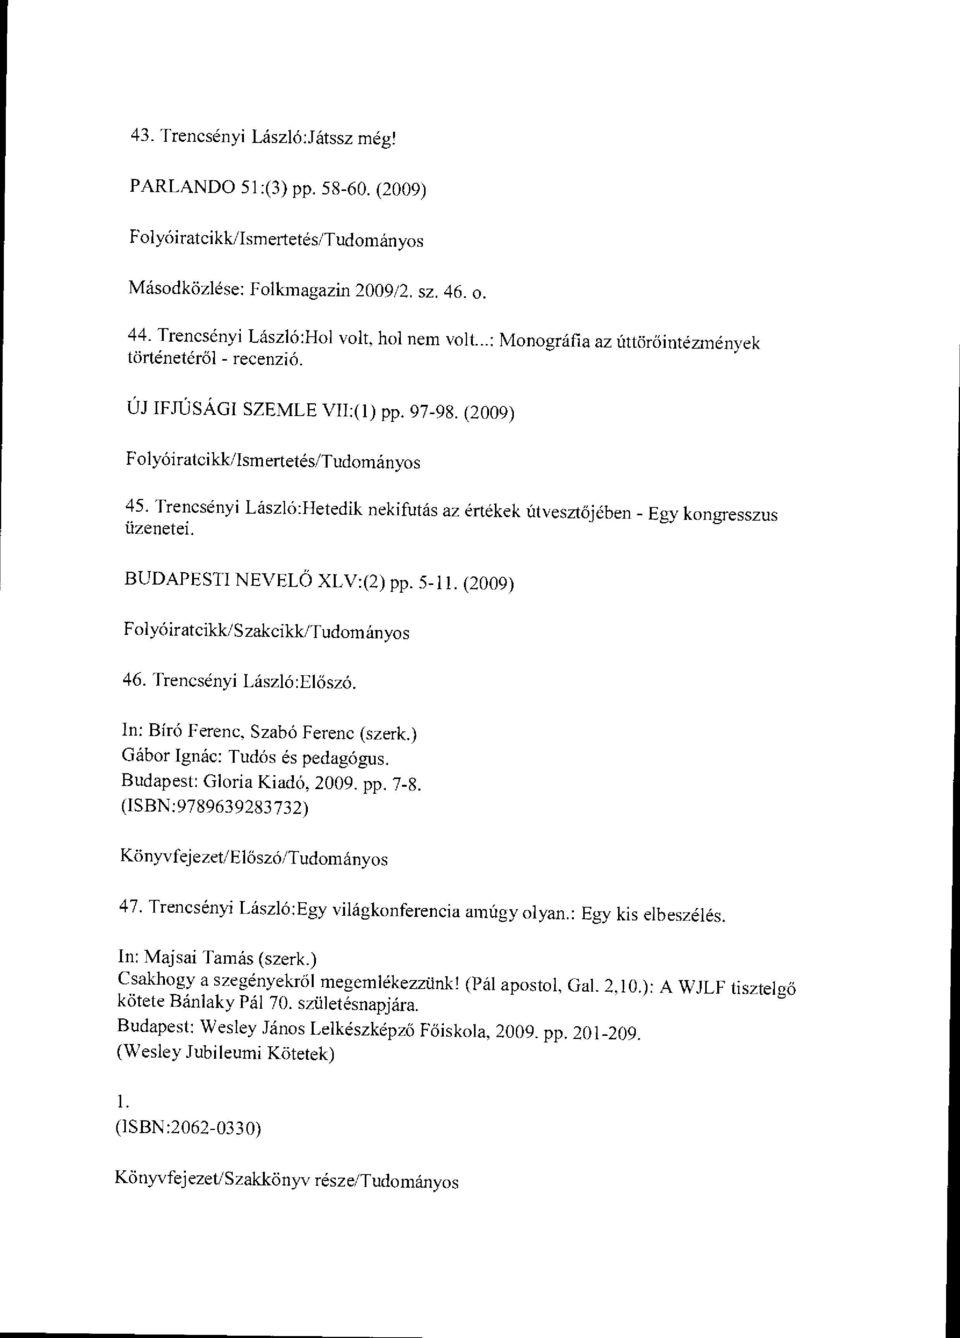 BUDAPESTI NEVELŐ XLV:(2) pp. 5-11. (2009) 46. Trencsényi László:El őszó. In: Bíró Ferenc, Szabó Ferenc (szerk.) Gábor Ignác: Tudós és pedagógus. Budapest: Gloria Kiadó, 2009. pp. 7-8.